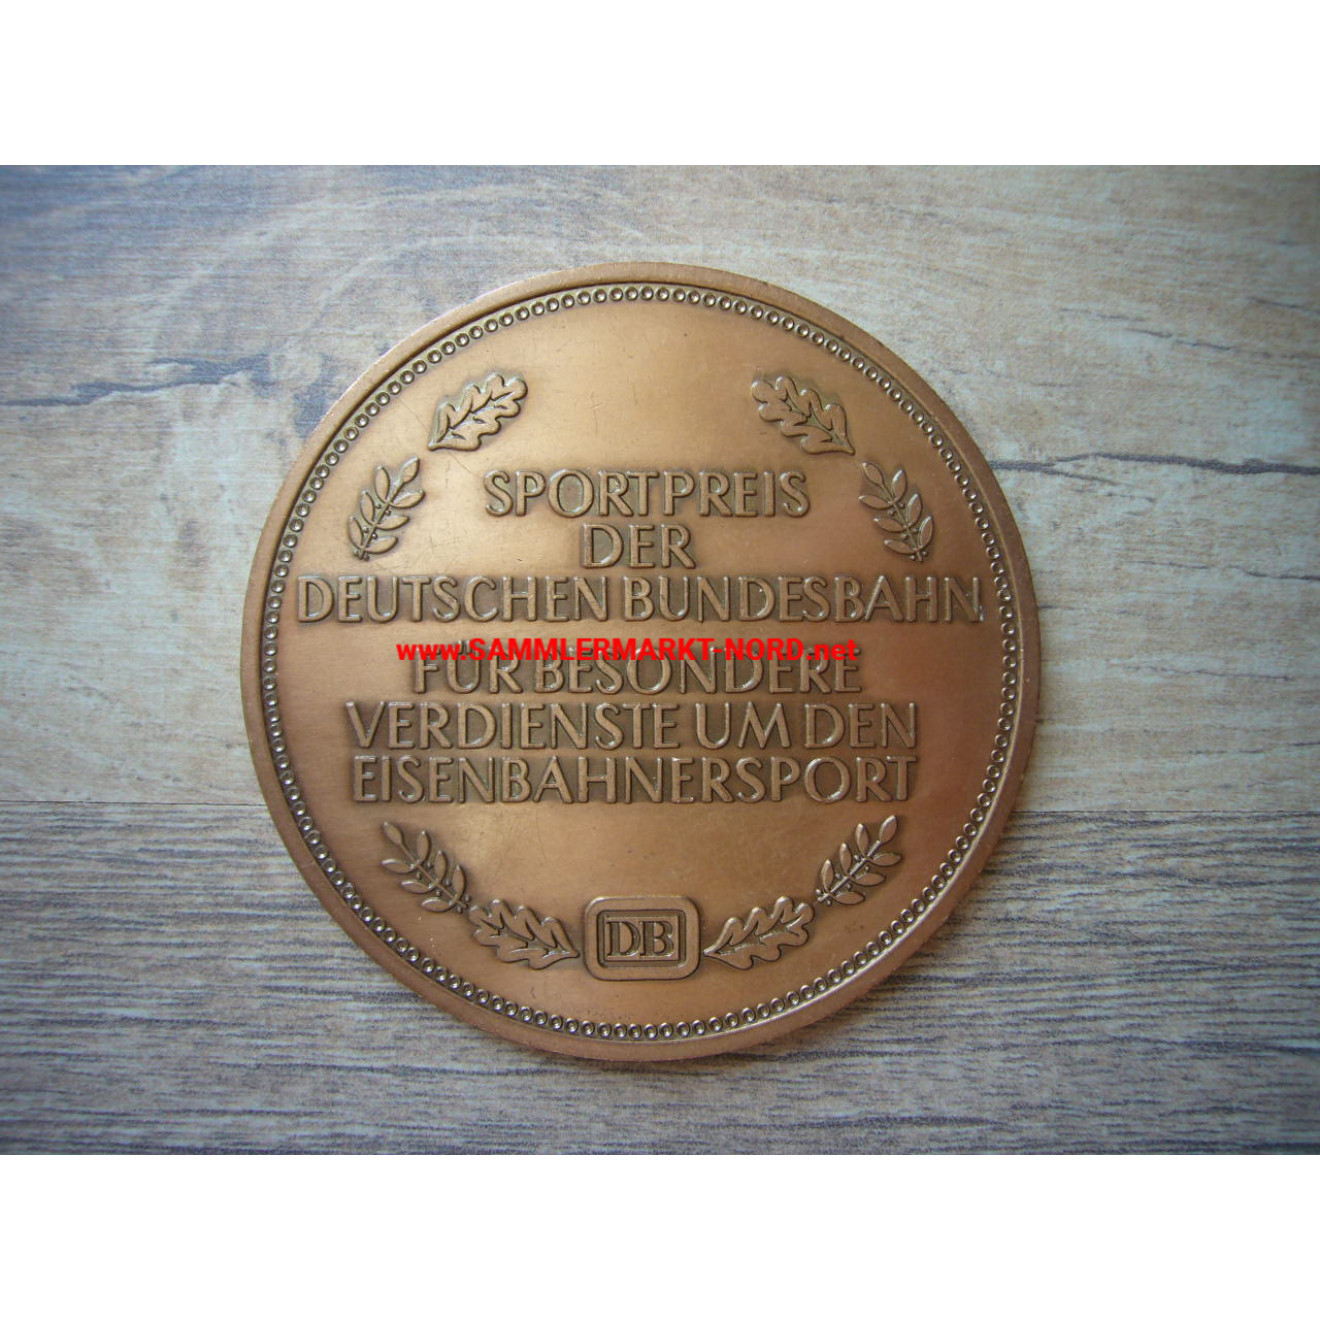 Sportpreis der Deutschen Bundesbahn - Medaille